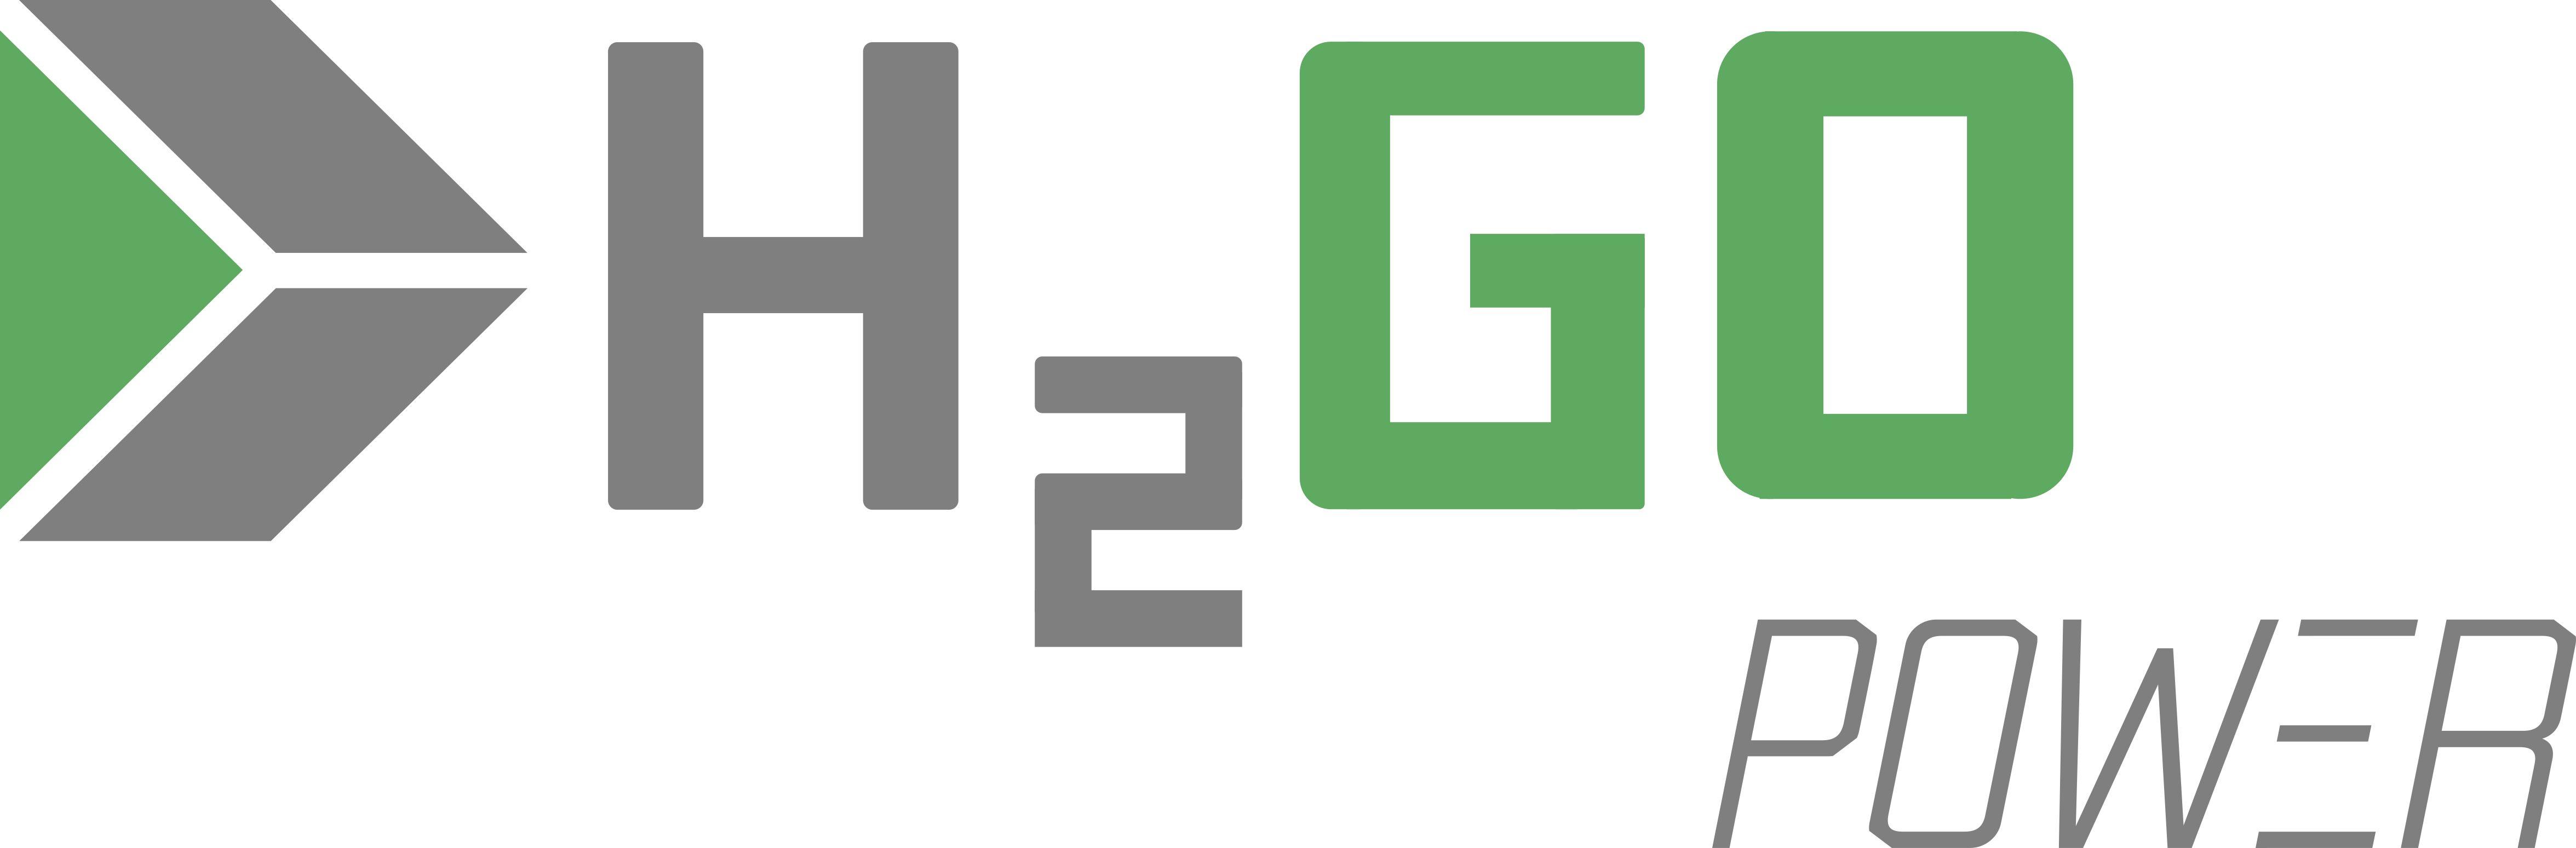 H2GO Power logo 300dpi 1